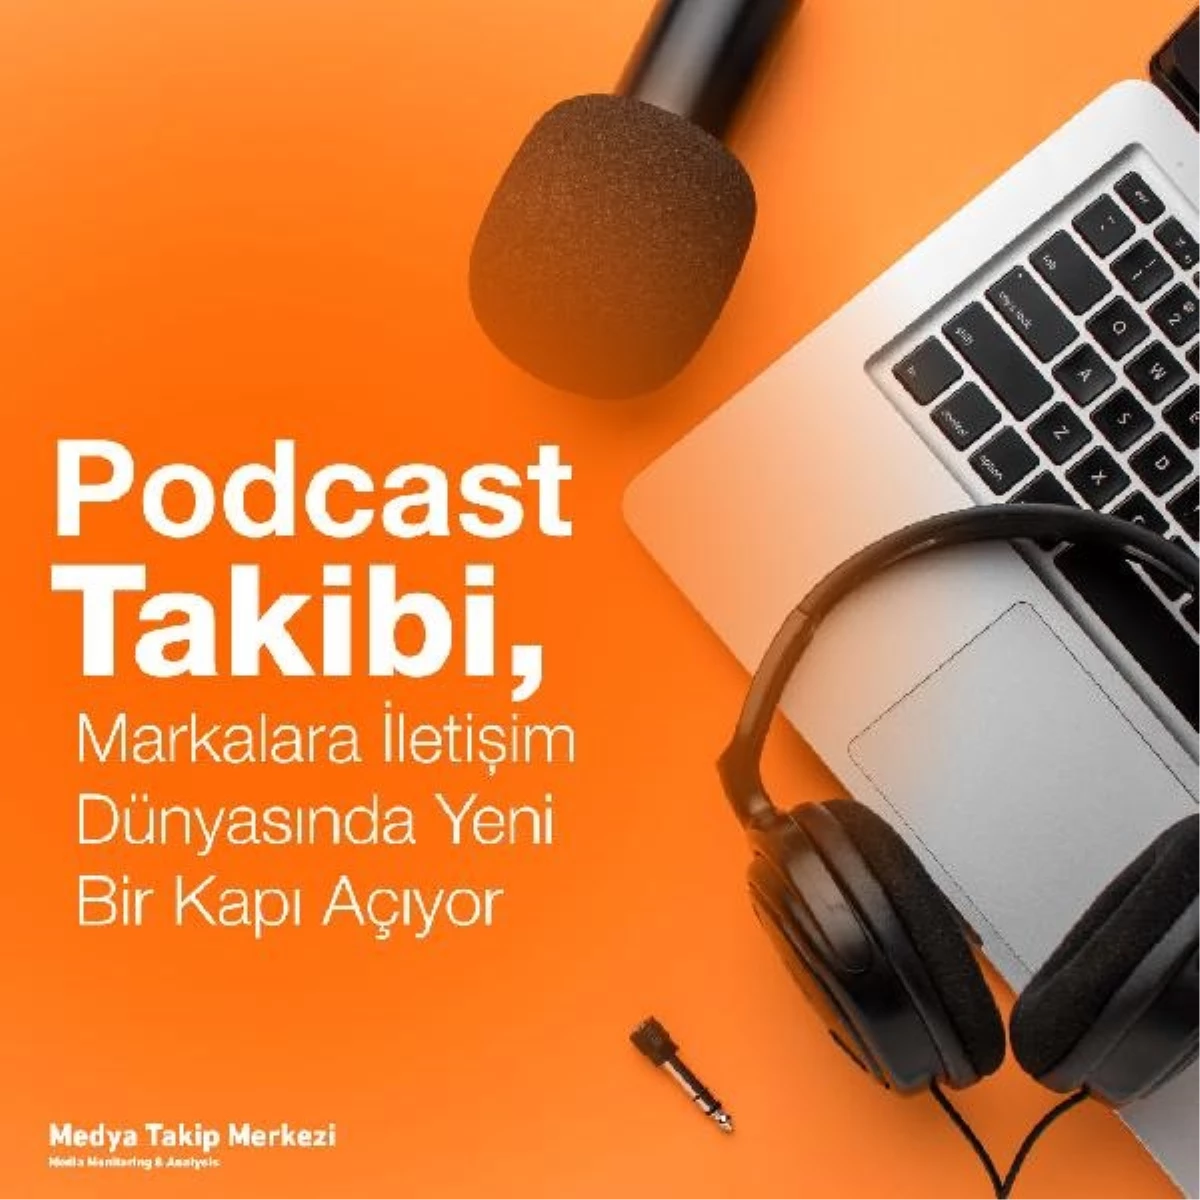 MTM, Podcast Takip Servisi ile Markalara İçerik Pazarlama Stratejisi Sunuyor